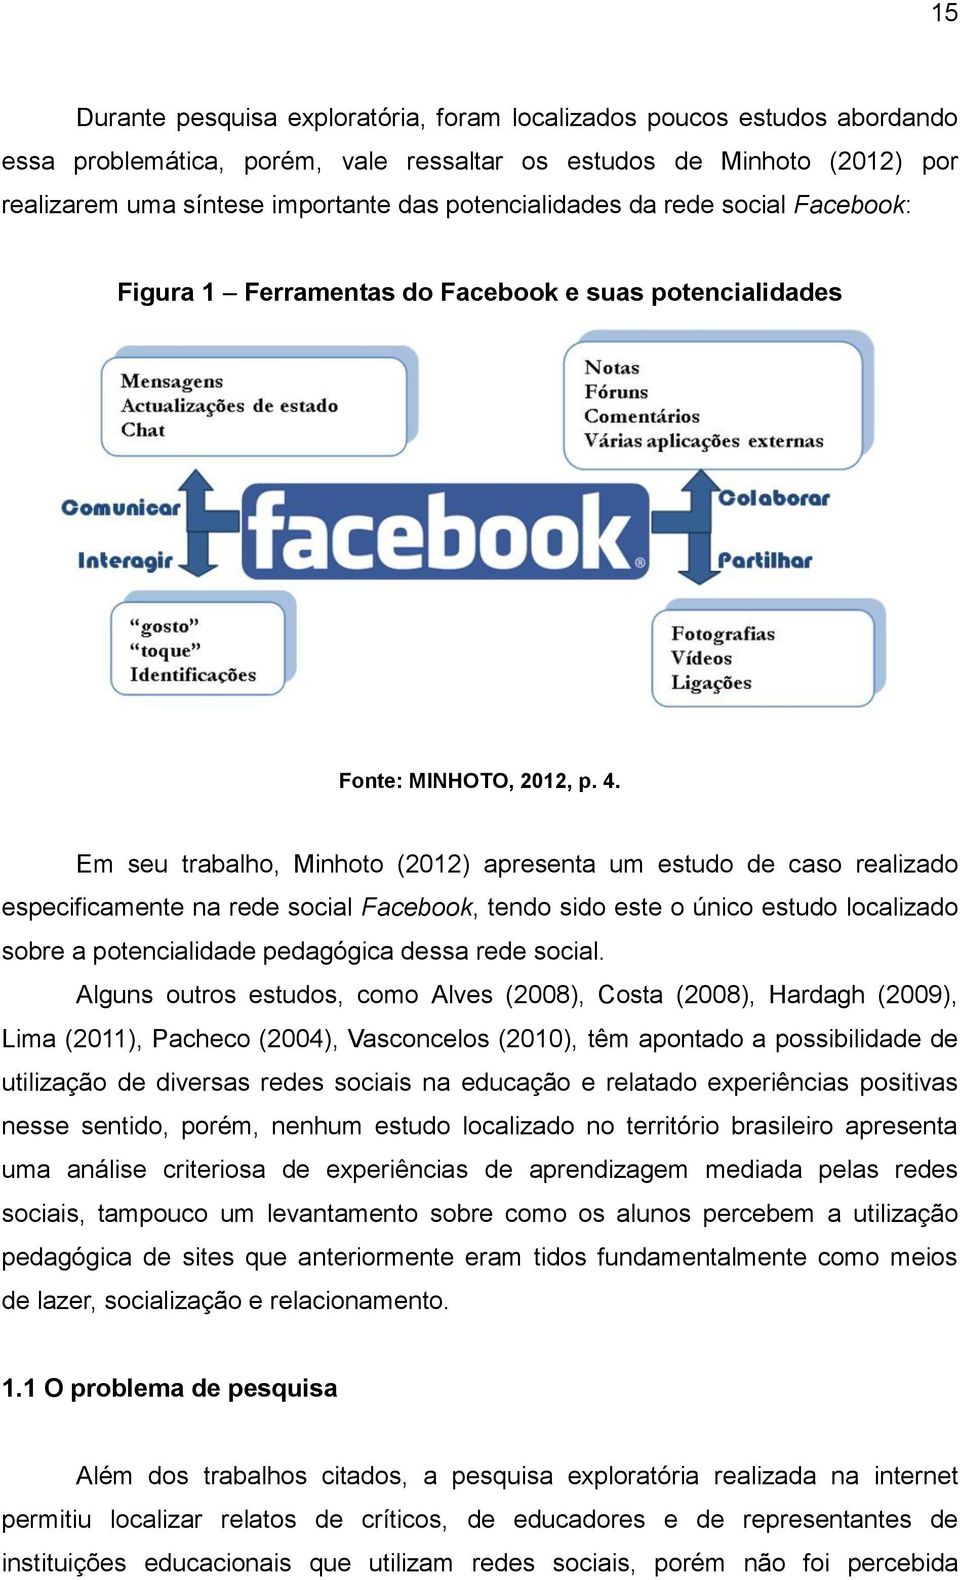 Em seu trabalho, Minhoto (2012) apresenta um estudo de caso realizado especificamente na rede social Facebook, tendo sido este o único estudo localizado sobre a potencialidade pedagógica dessa rede